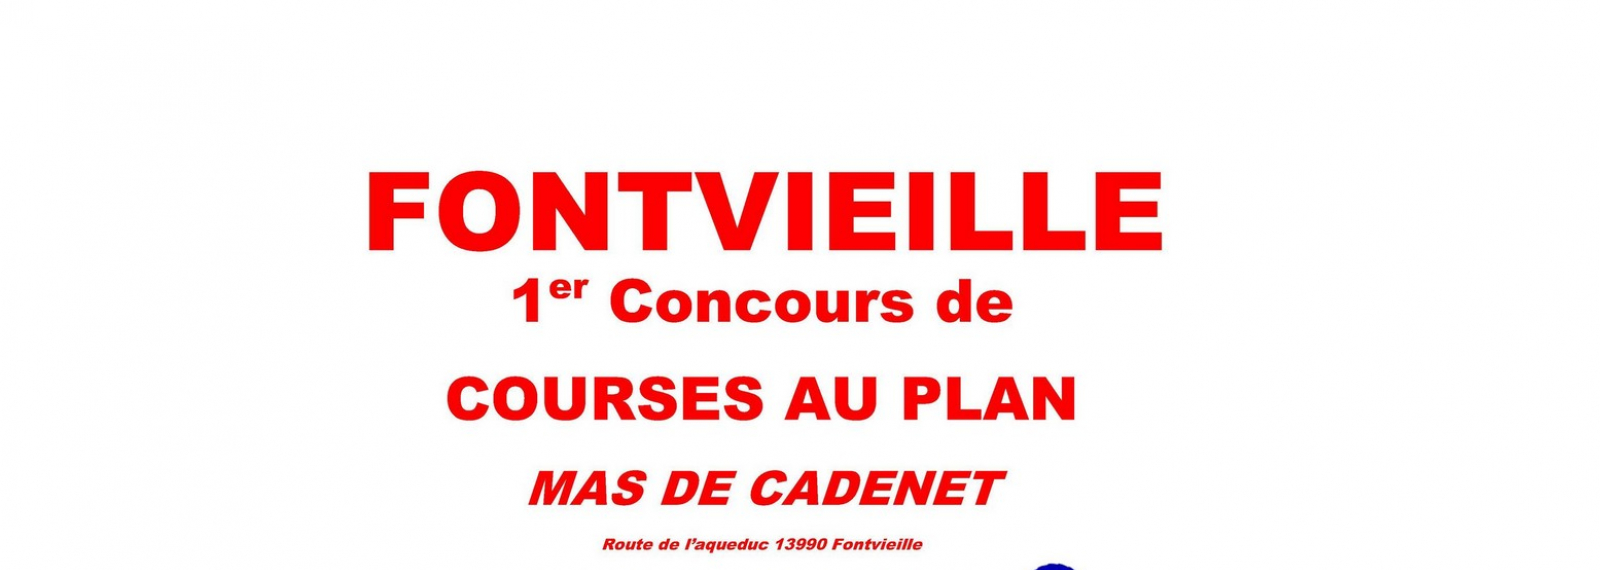 Club Taurin Fontvieillois - Courses au plan